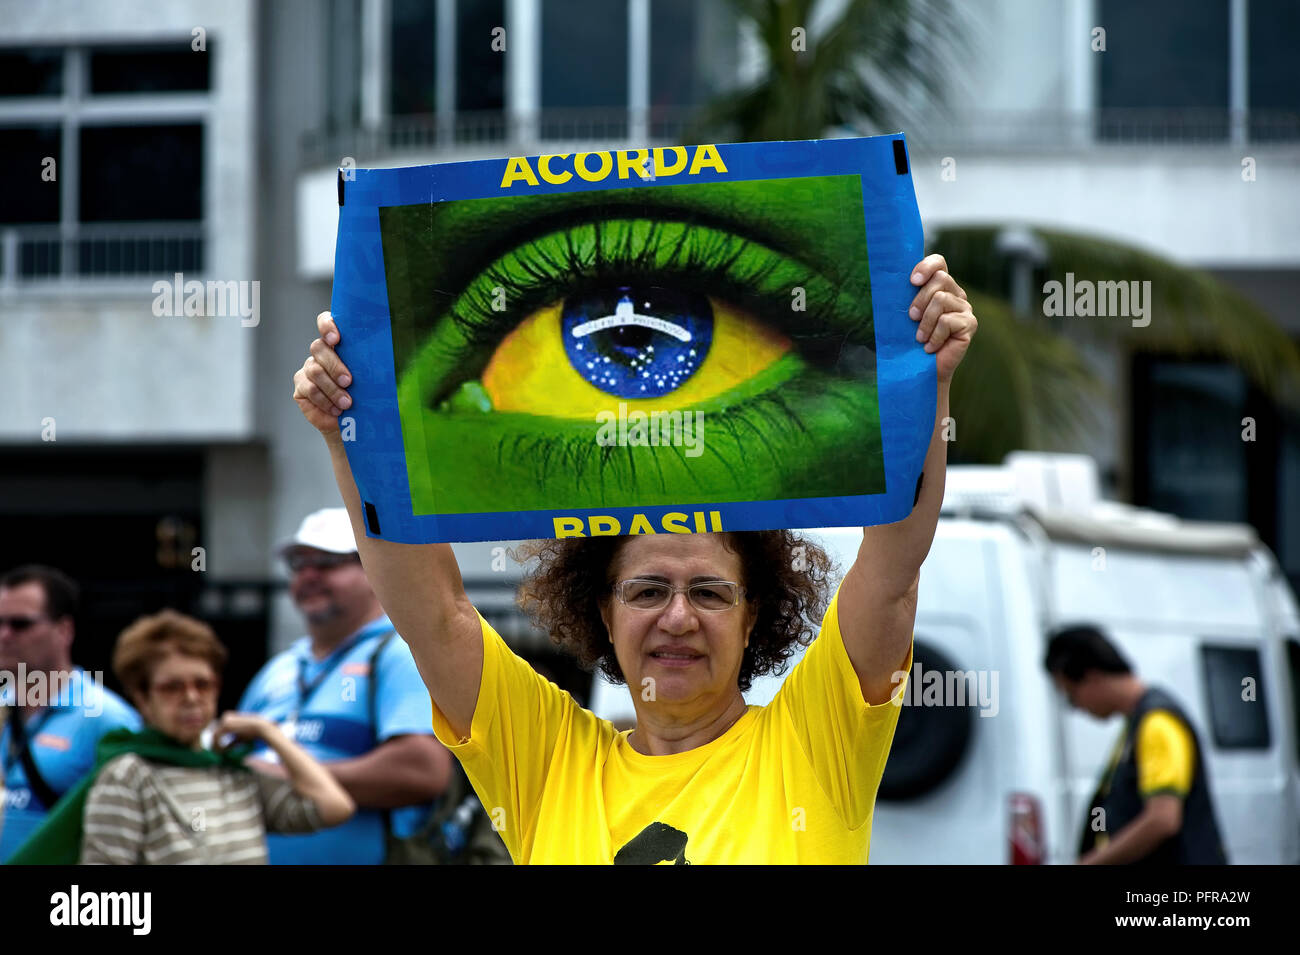 Copacabana, Rio de Janeiro - 4 Dicembre 2016: un manifestante tiene un cartello che dice "Wake up Brasile" in portoghese durante una marcia contro la corruzione Foto Stock